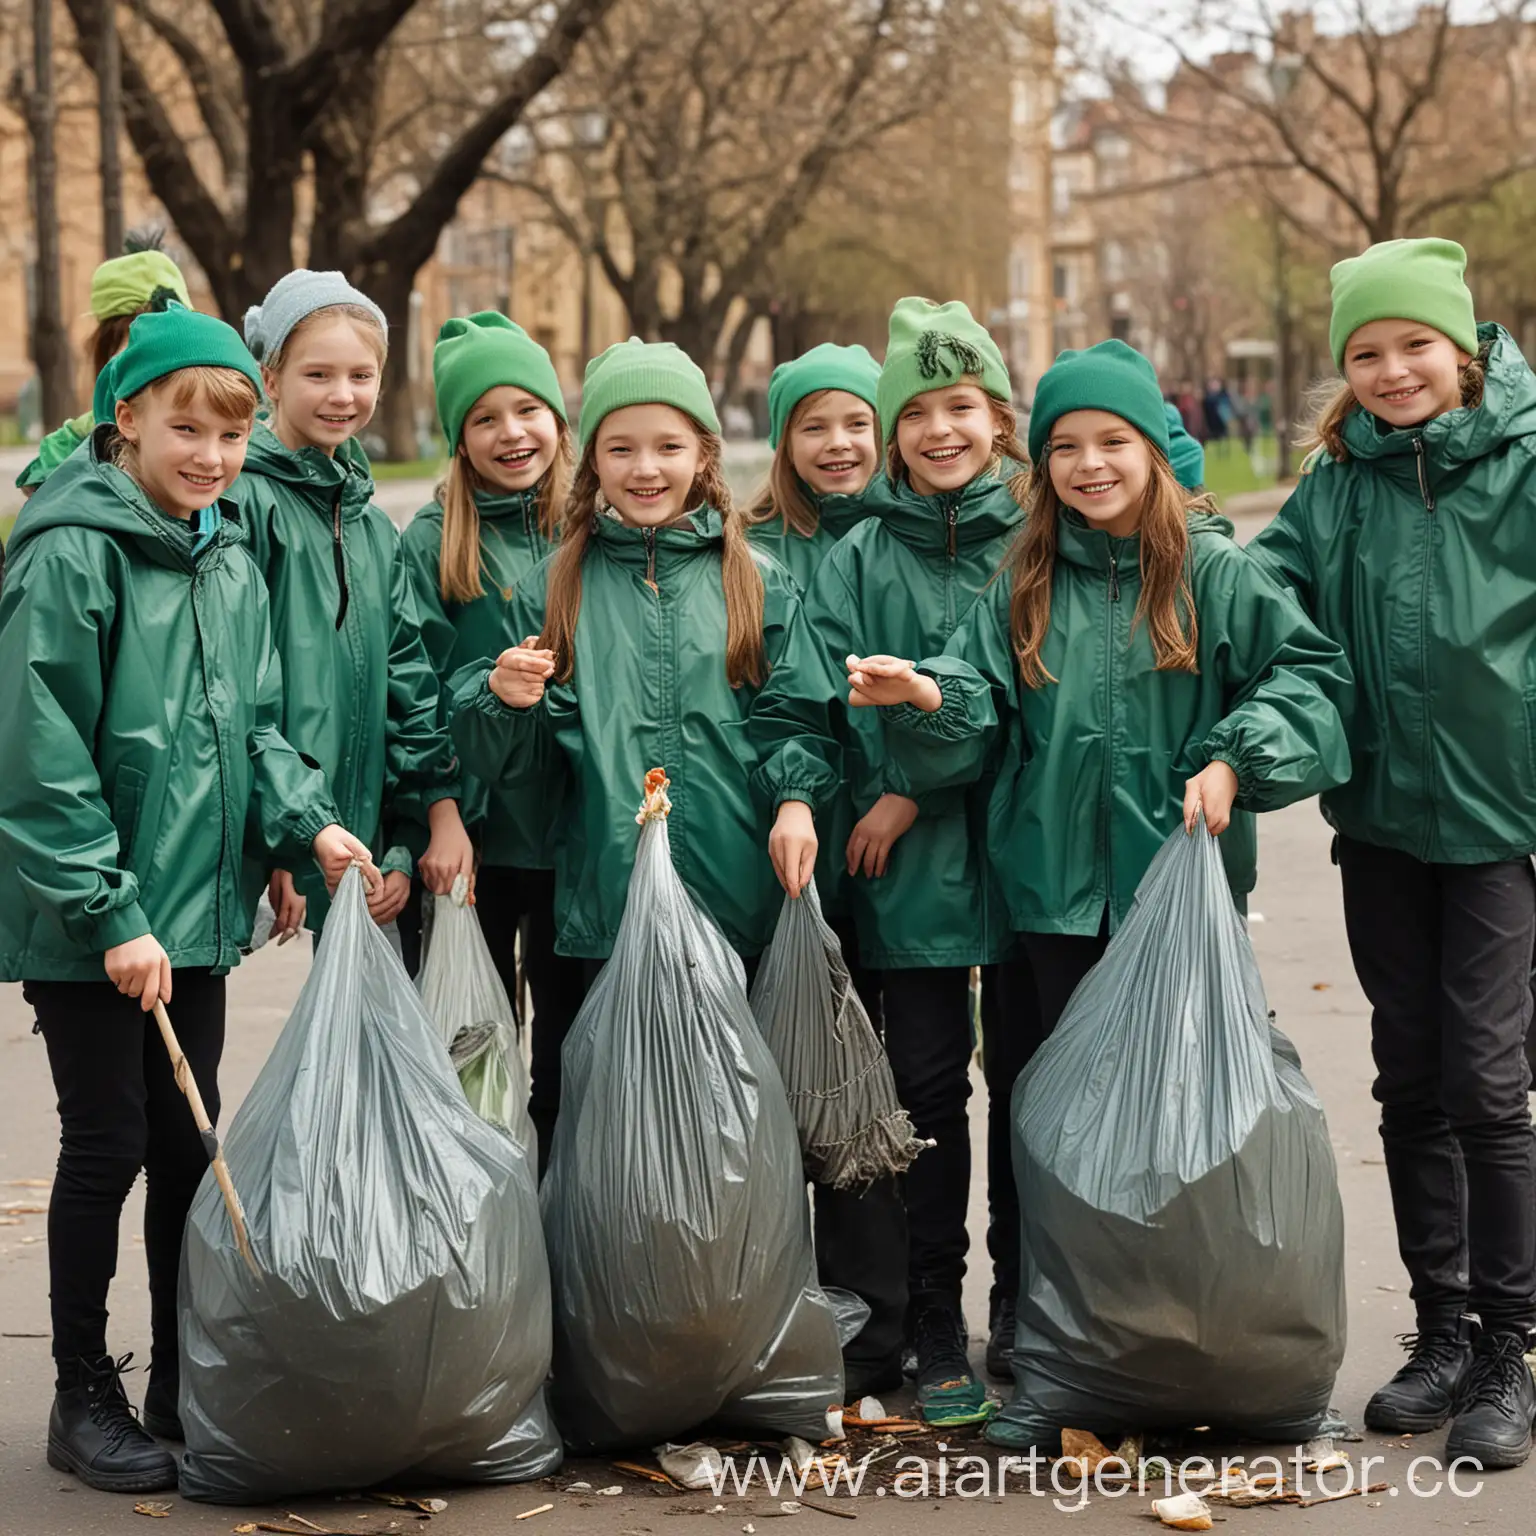 Реальная фотография. Группа школьников которым 12 лет в парке убирают мусор. У школьников в руках пакеты для мусора и грабли. На них зелёные куртки и зелёные кепки. Все улыбаются. На улице весна